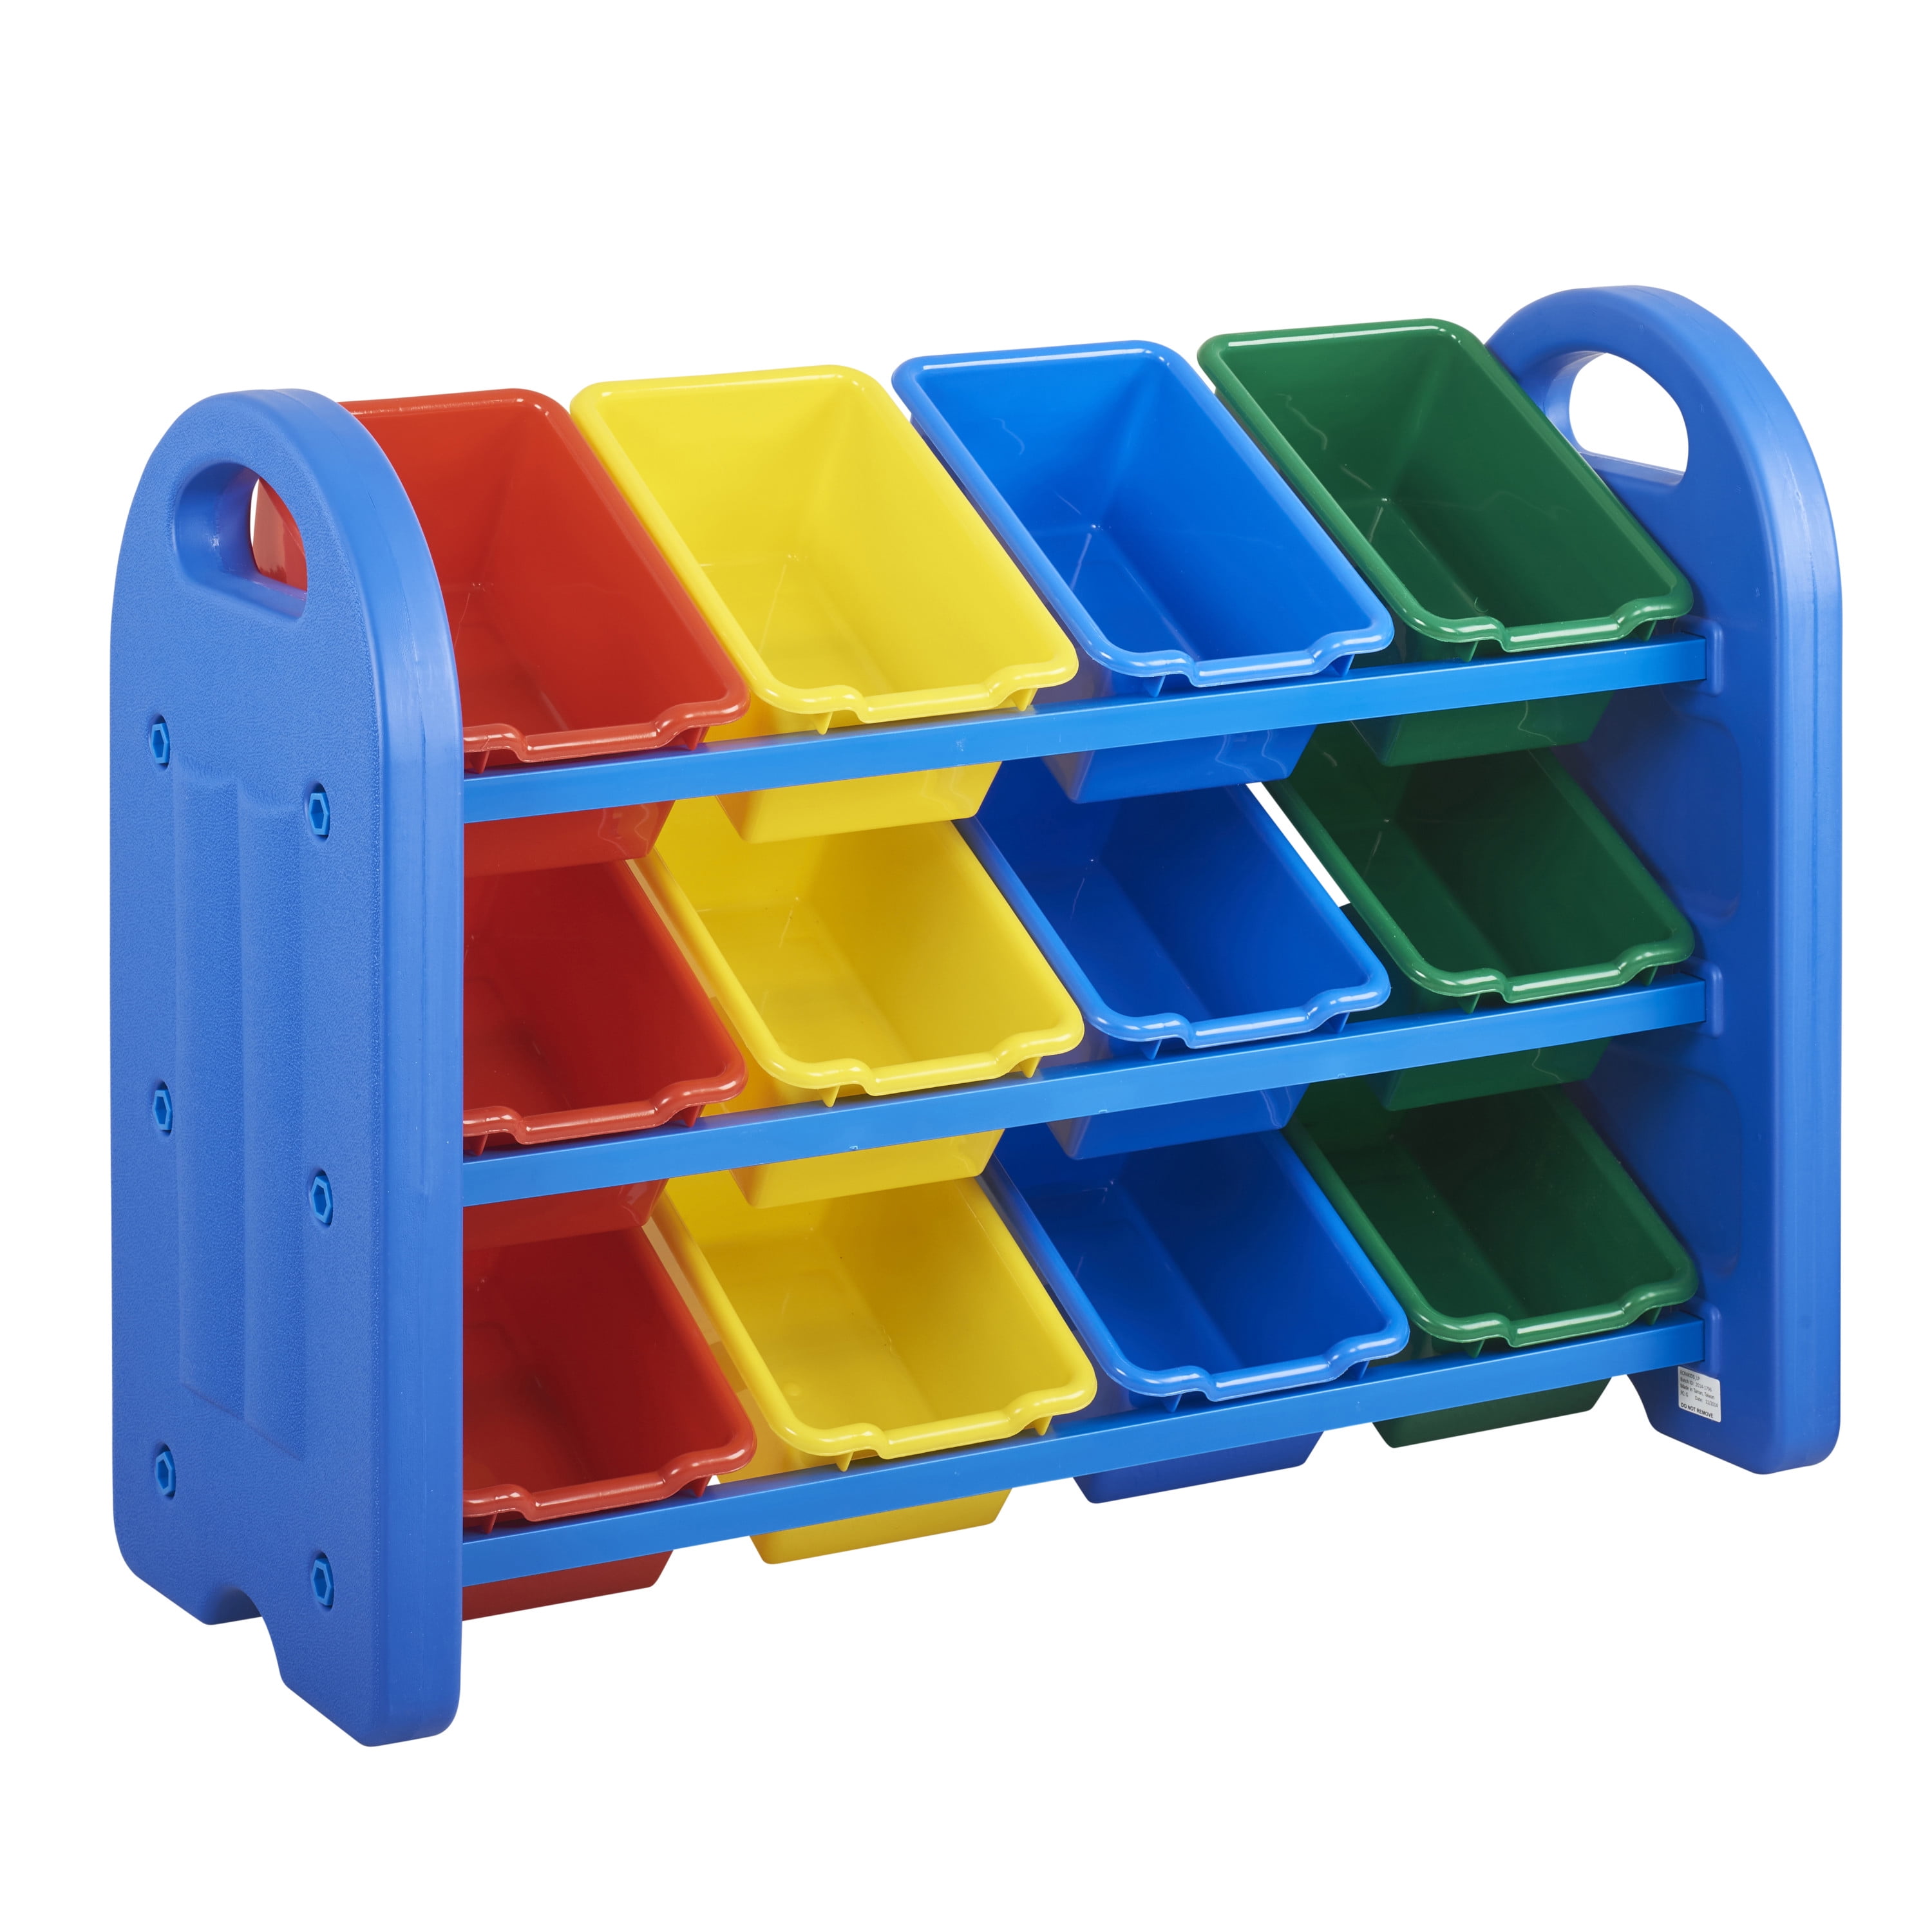 3 tier toy storage organizer